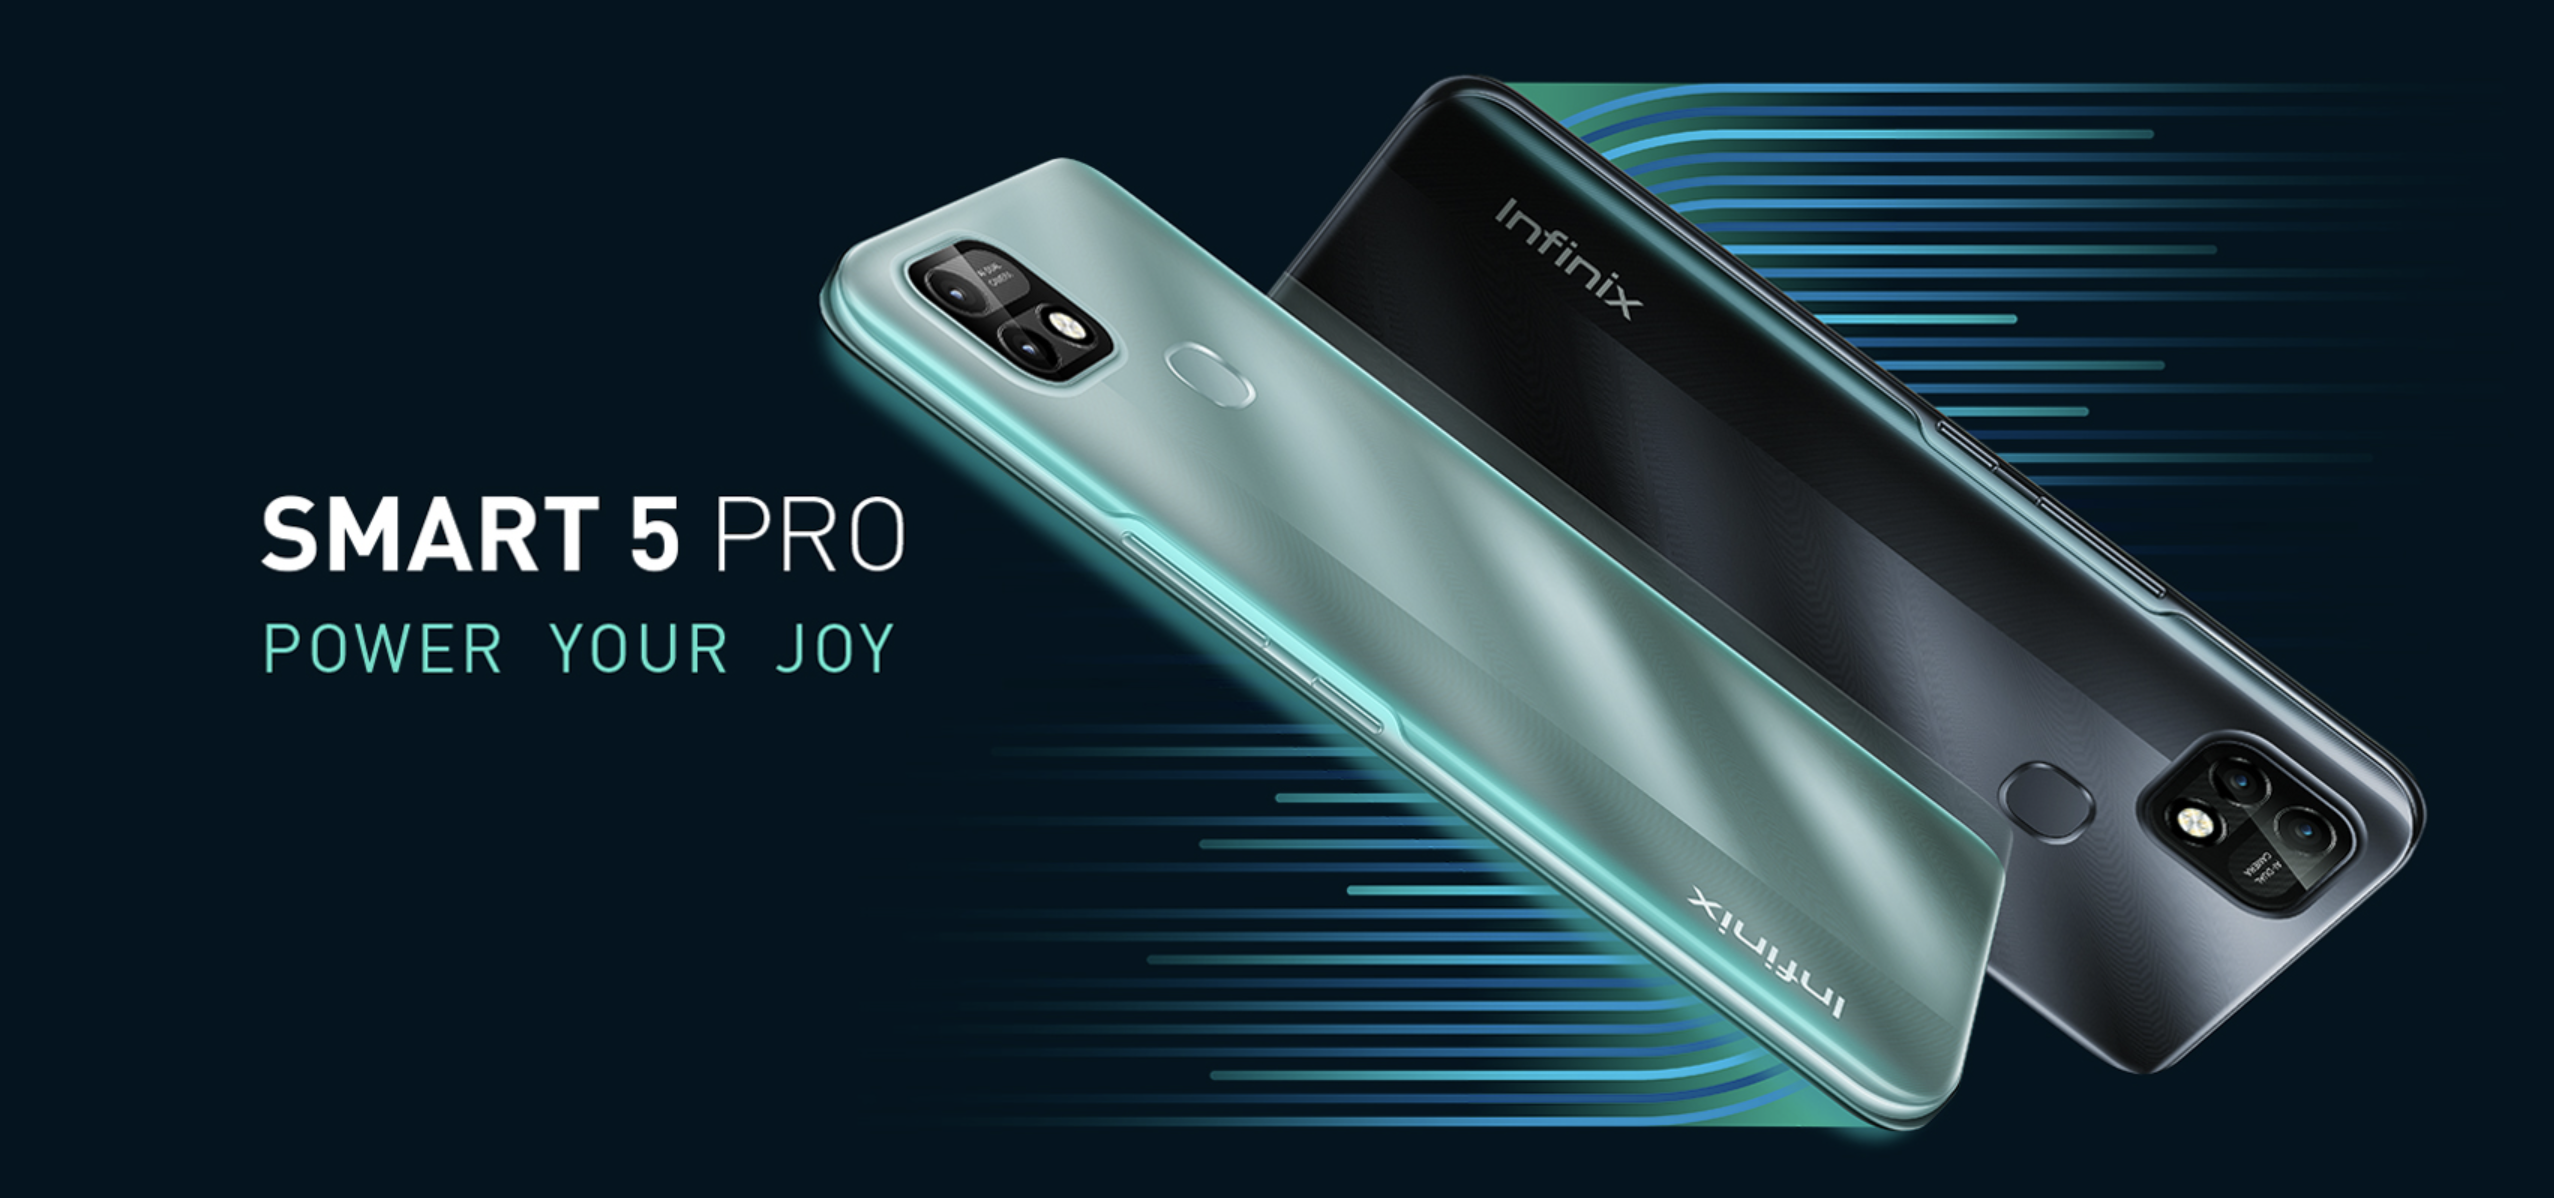 Infinix Smart 5 Pro: smartphone economico con batteria 6000mAh e Android 11 Go Edition a bordo